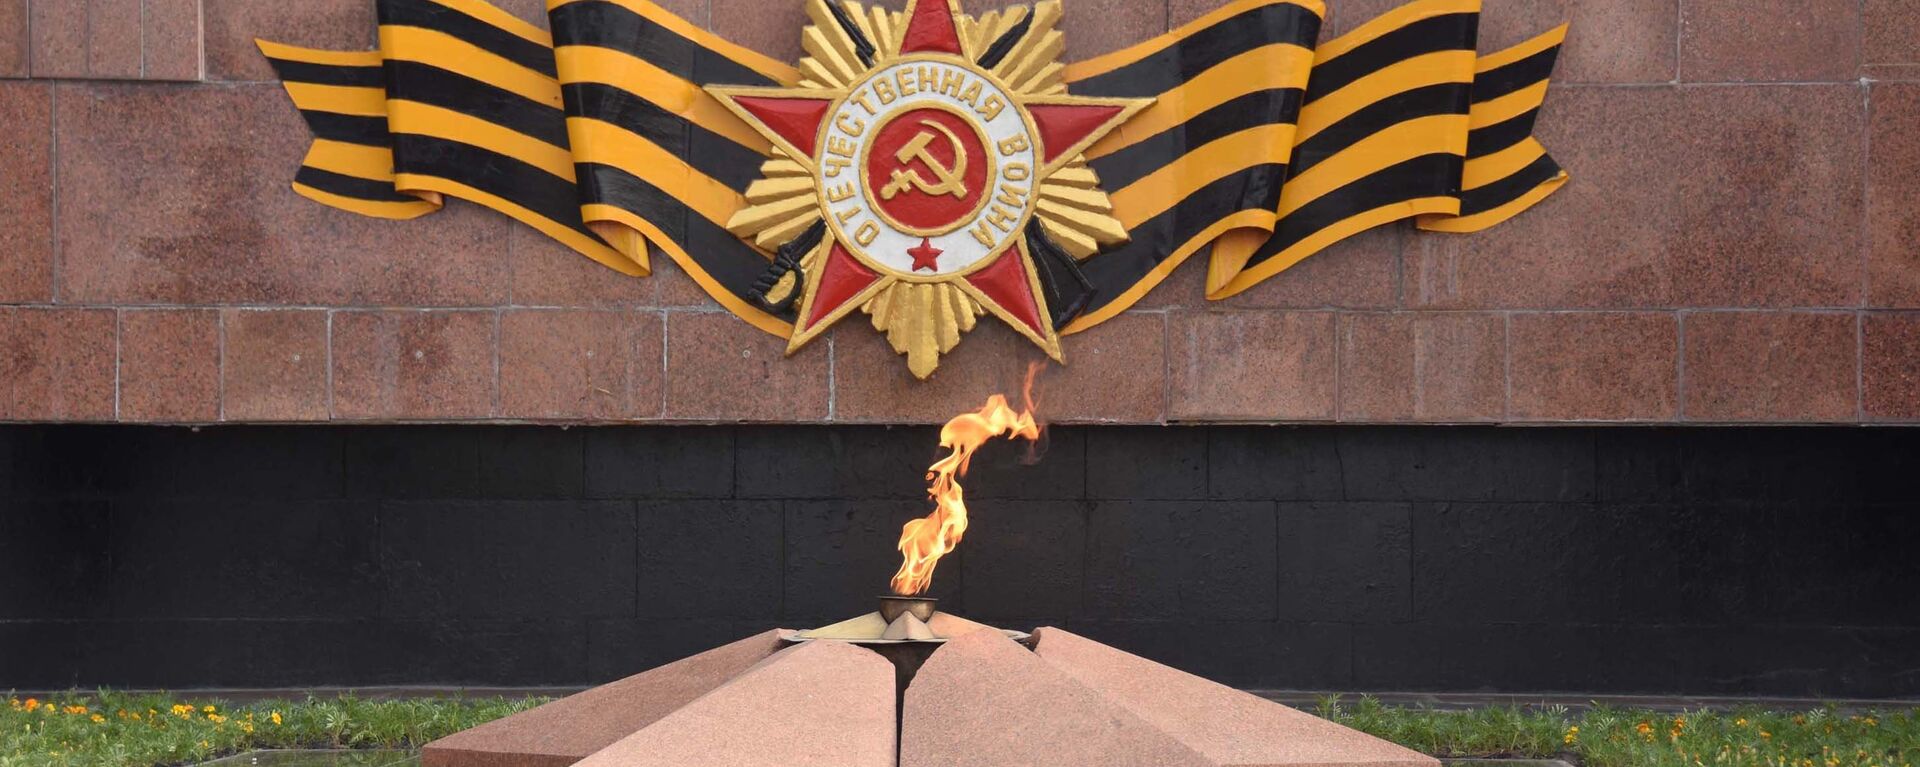 Вечный огонь в Парке Победы в Душанбе, архивное фото - Sputnik Таджикистан, 1920, 22.04.2020